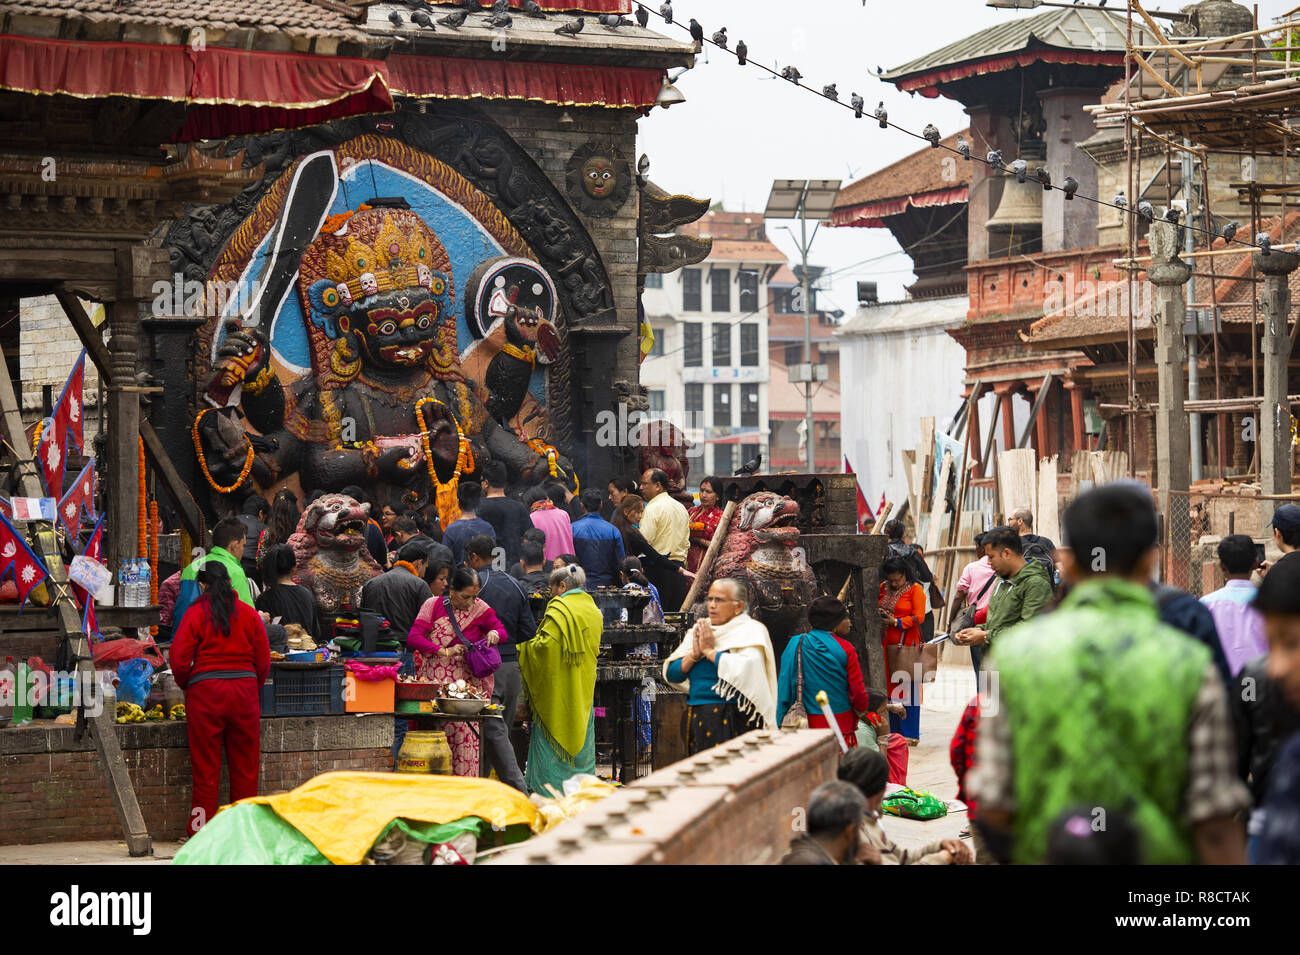 Anhänger verehren Kal Bhairav in Kathmandu Durbar Square während der der Nepalesischen Neues Jahr 2073 Festival. Stockfoto